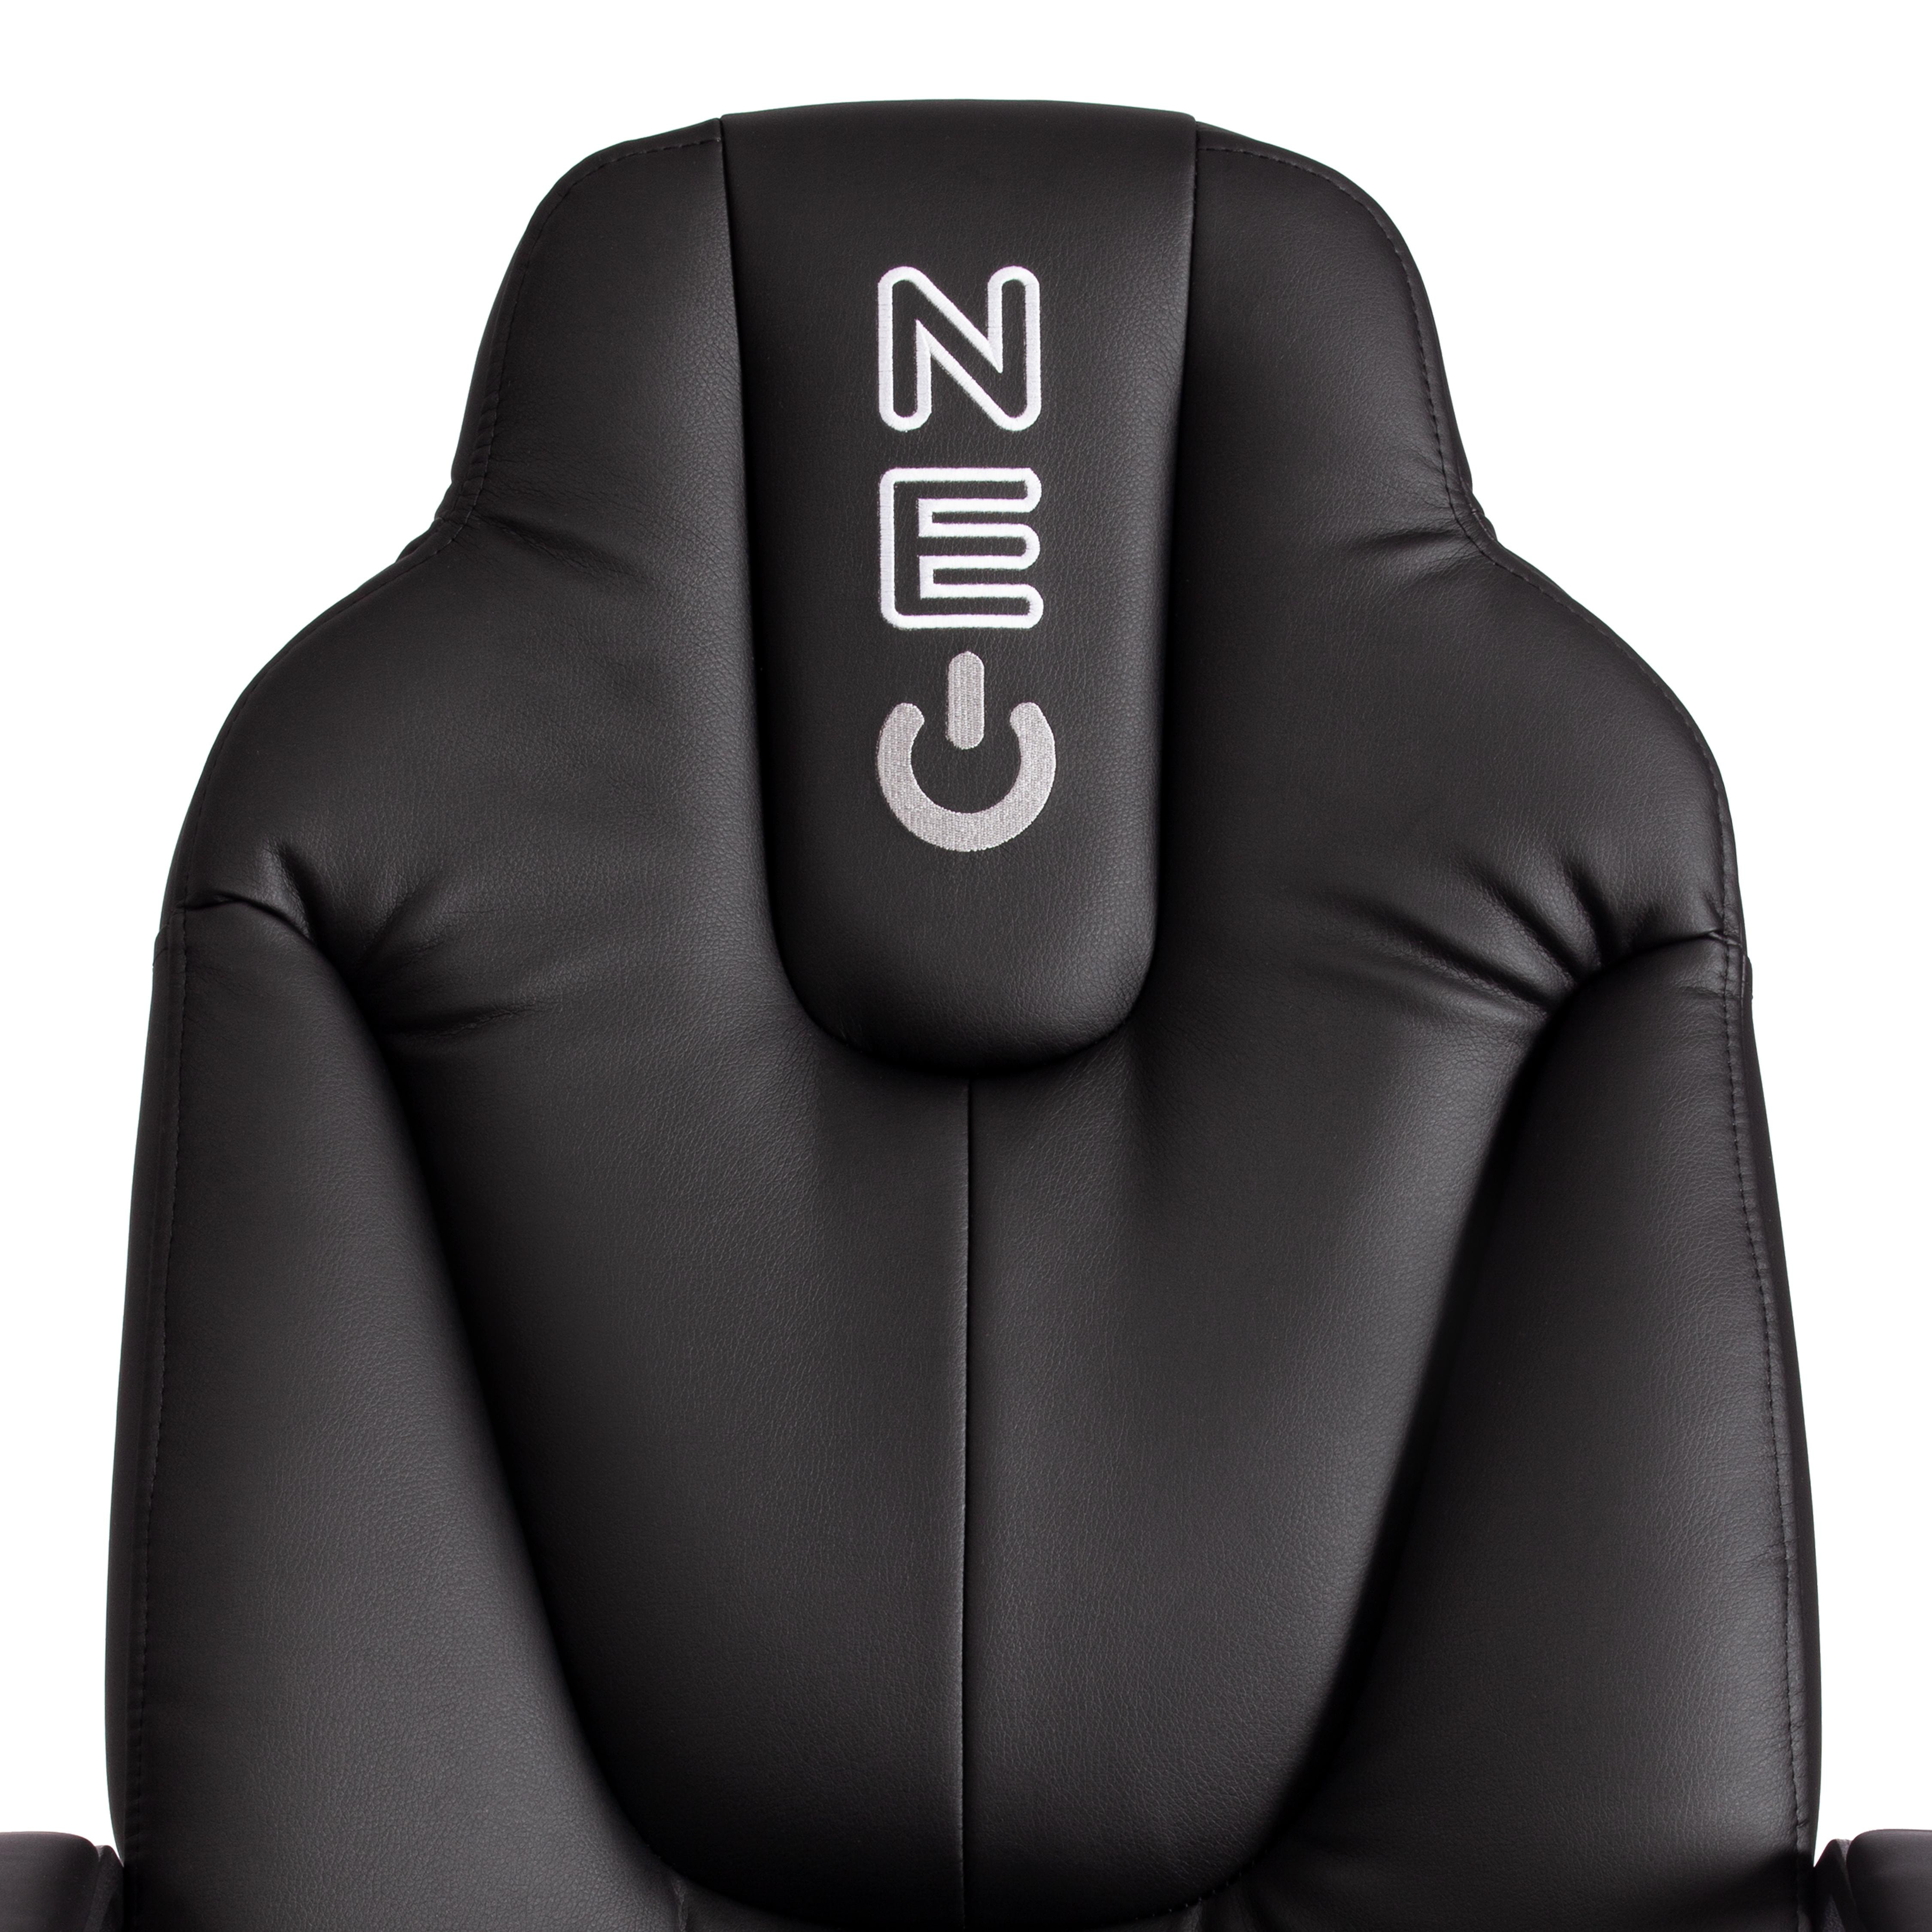 Кресло NEO 2 (22) кож/зам, черный, 36-6